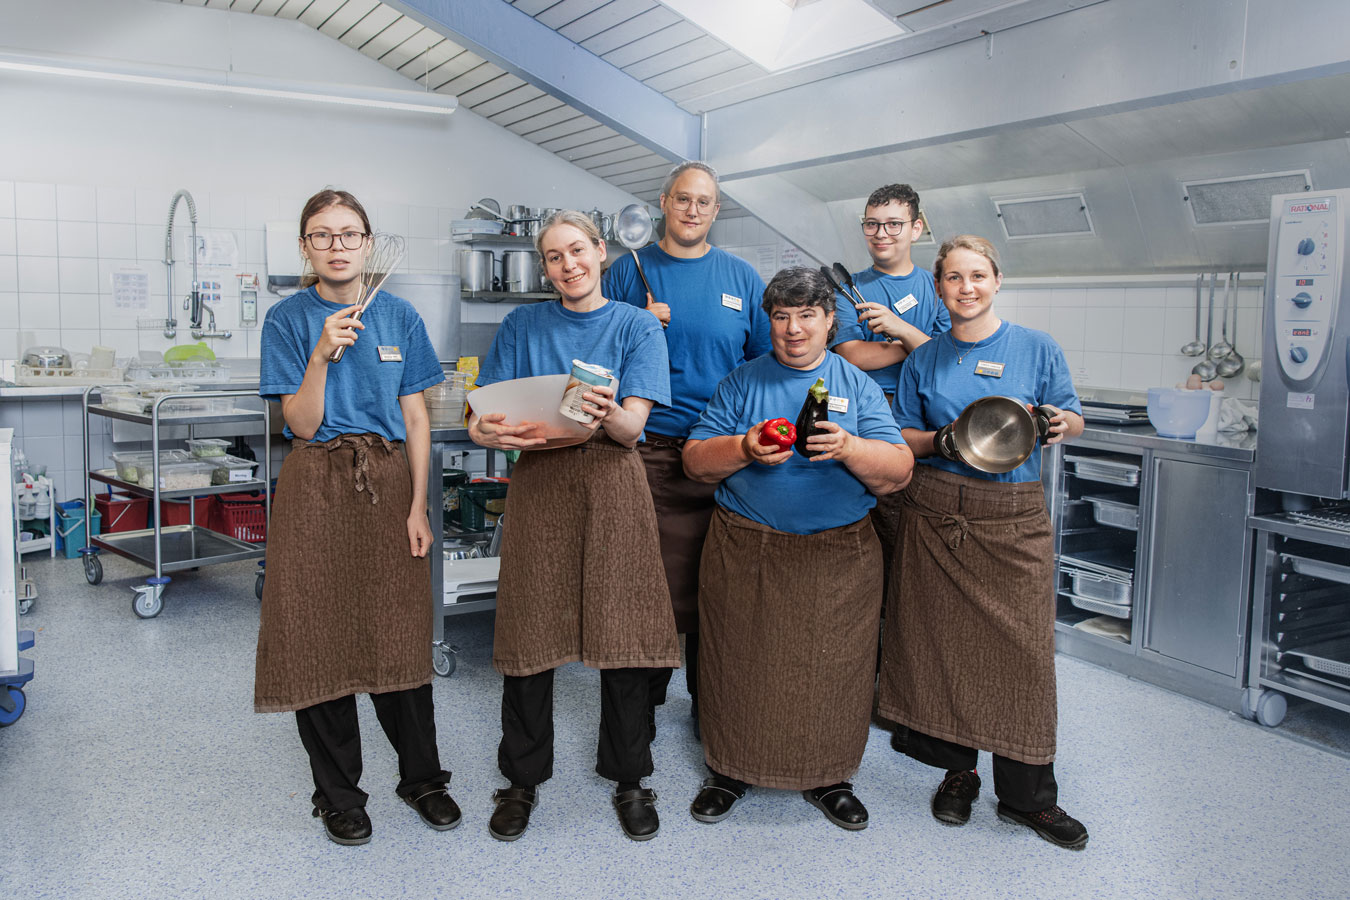 Bild mit 6 Personen des Teams Bistretto. Sie befinden sich in der Küche und haben alle einen Gegenstand in der Hand, z. B. Kochtopf, Schöpflöffel, Schwingbesen.